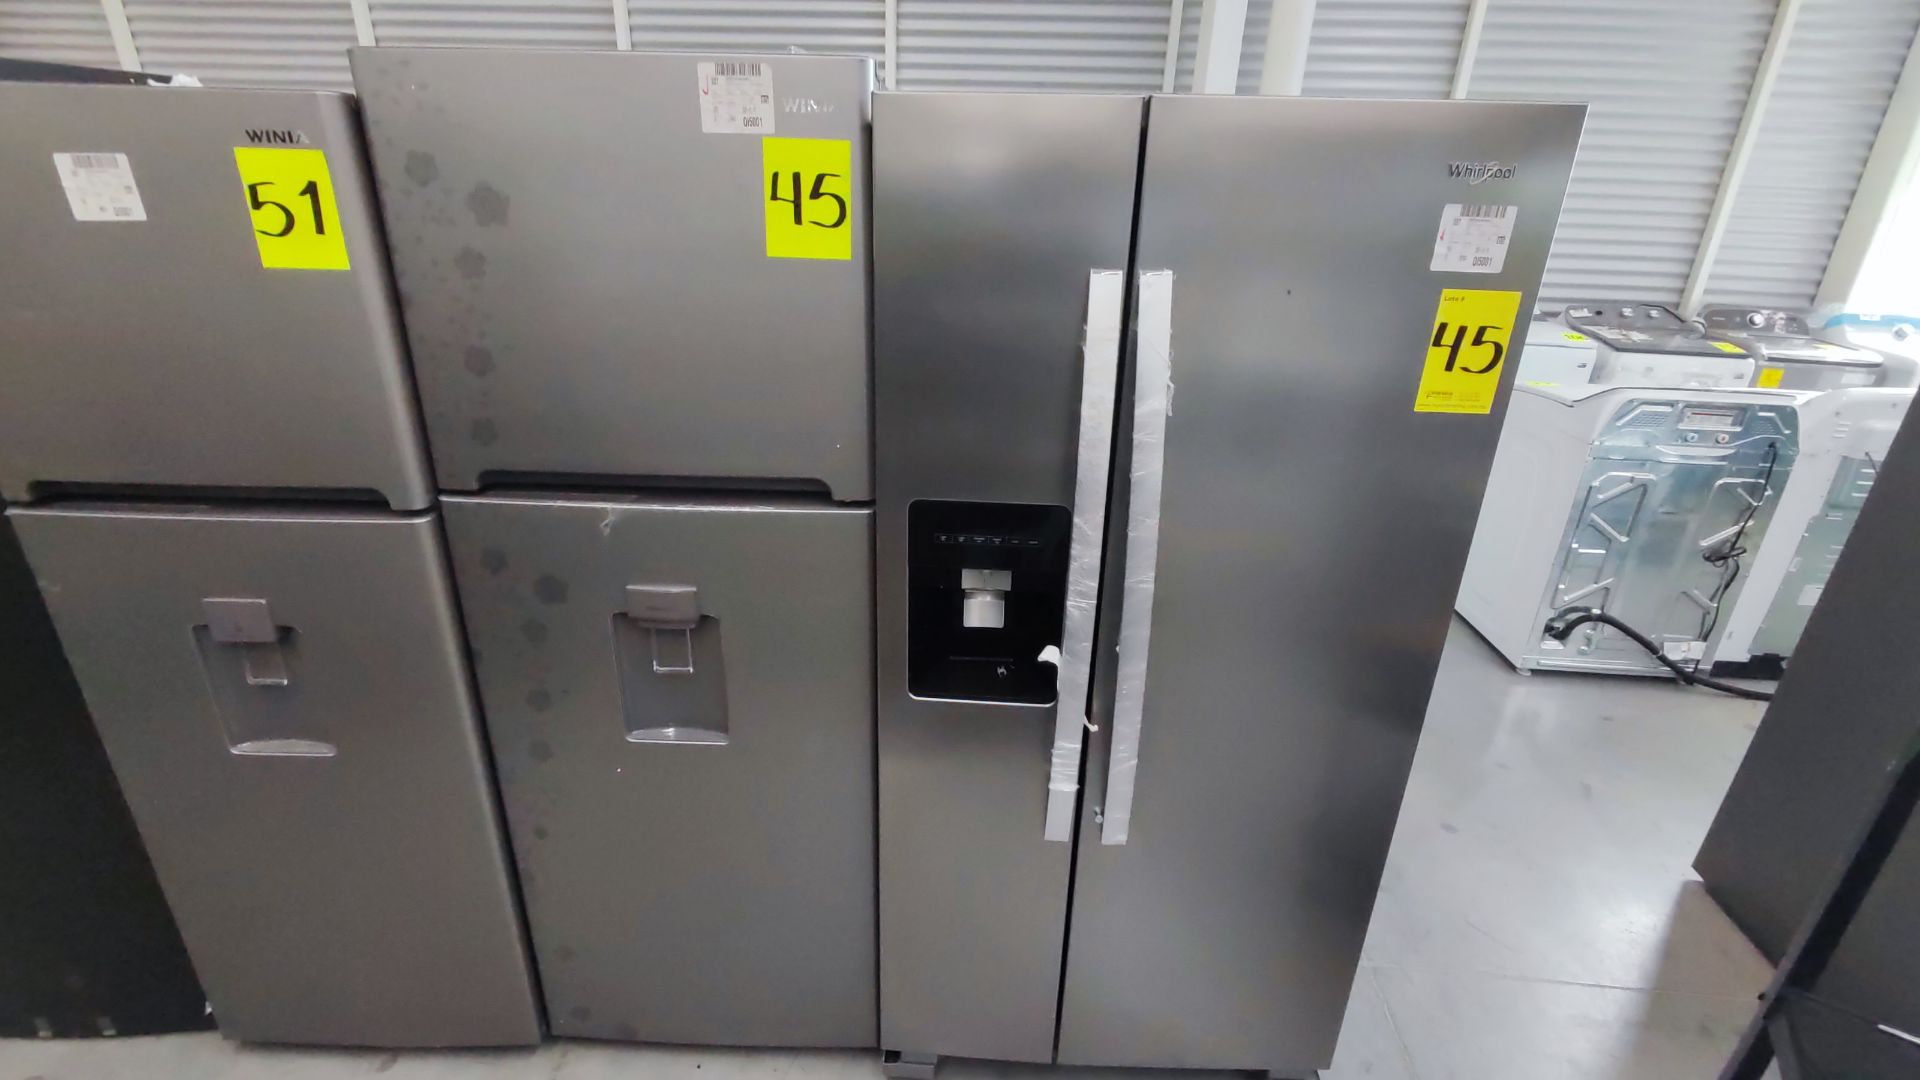 Lote Conformado por 2 Refrigeradores, Contiene; 1 Refrigerador con Dispensador de Agua Marca Whirlp - Image 4 of 13